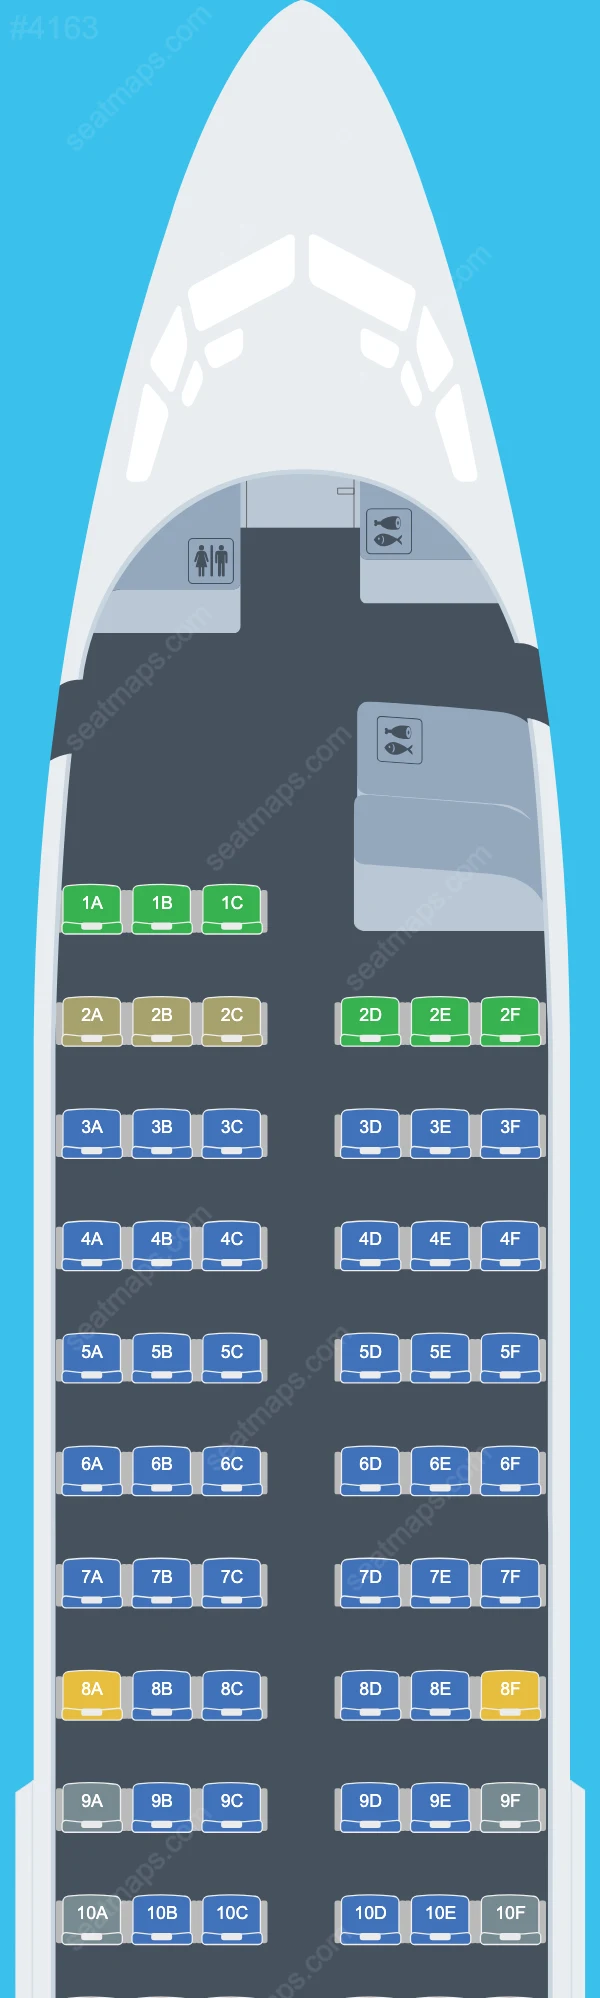 Blue Air Boeing 737 Seat Maps 737-300